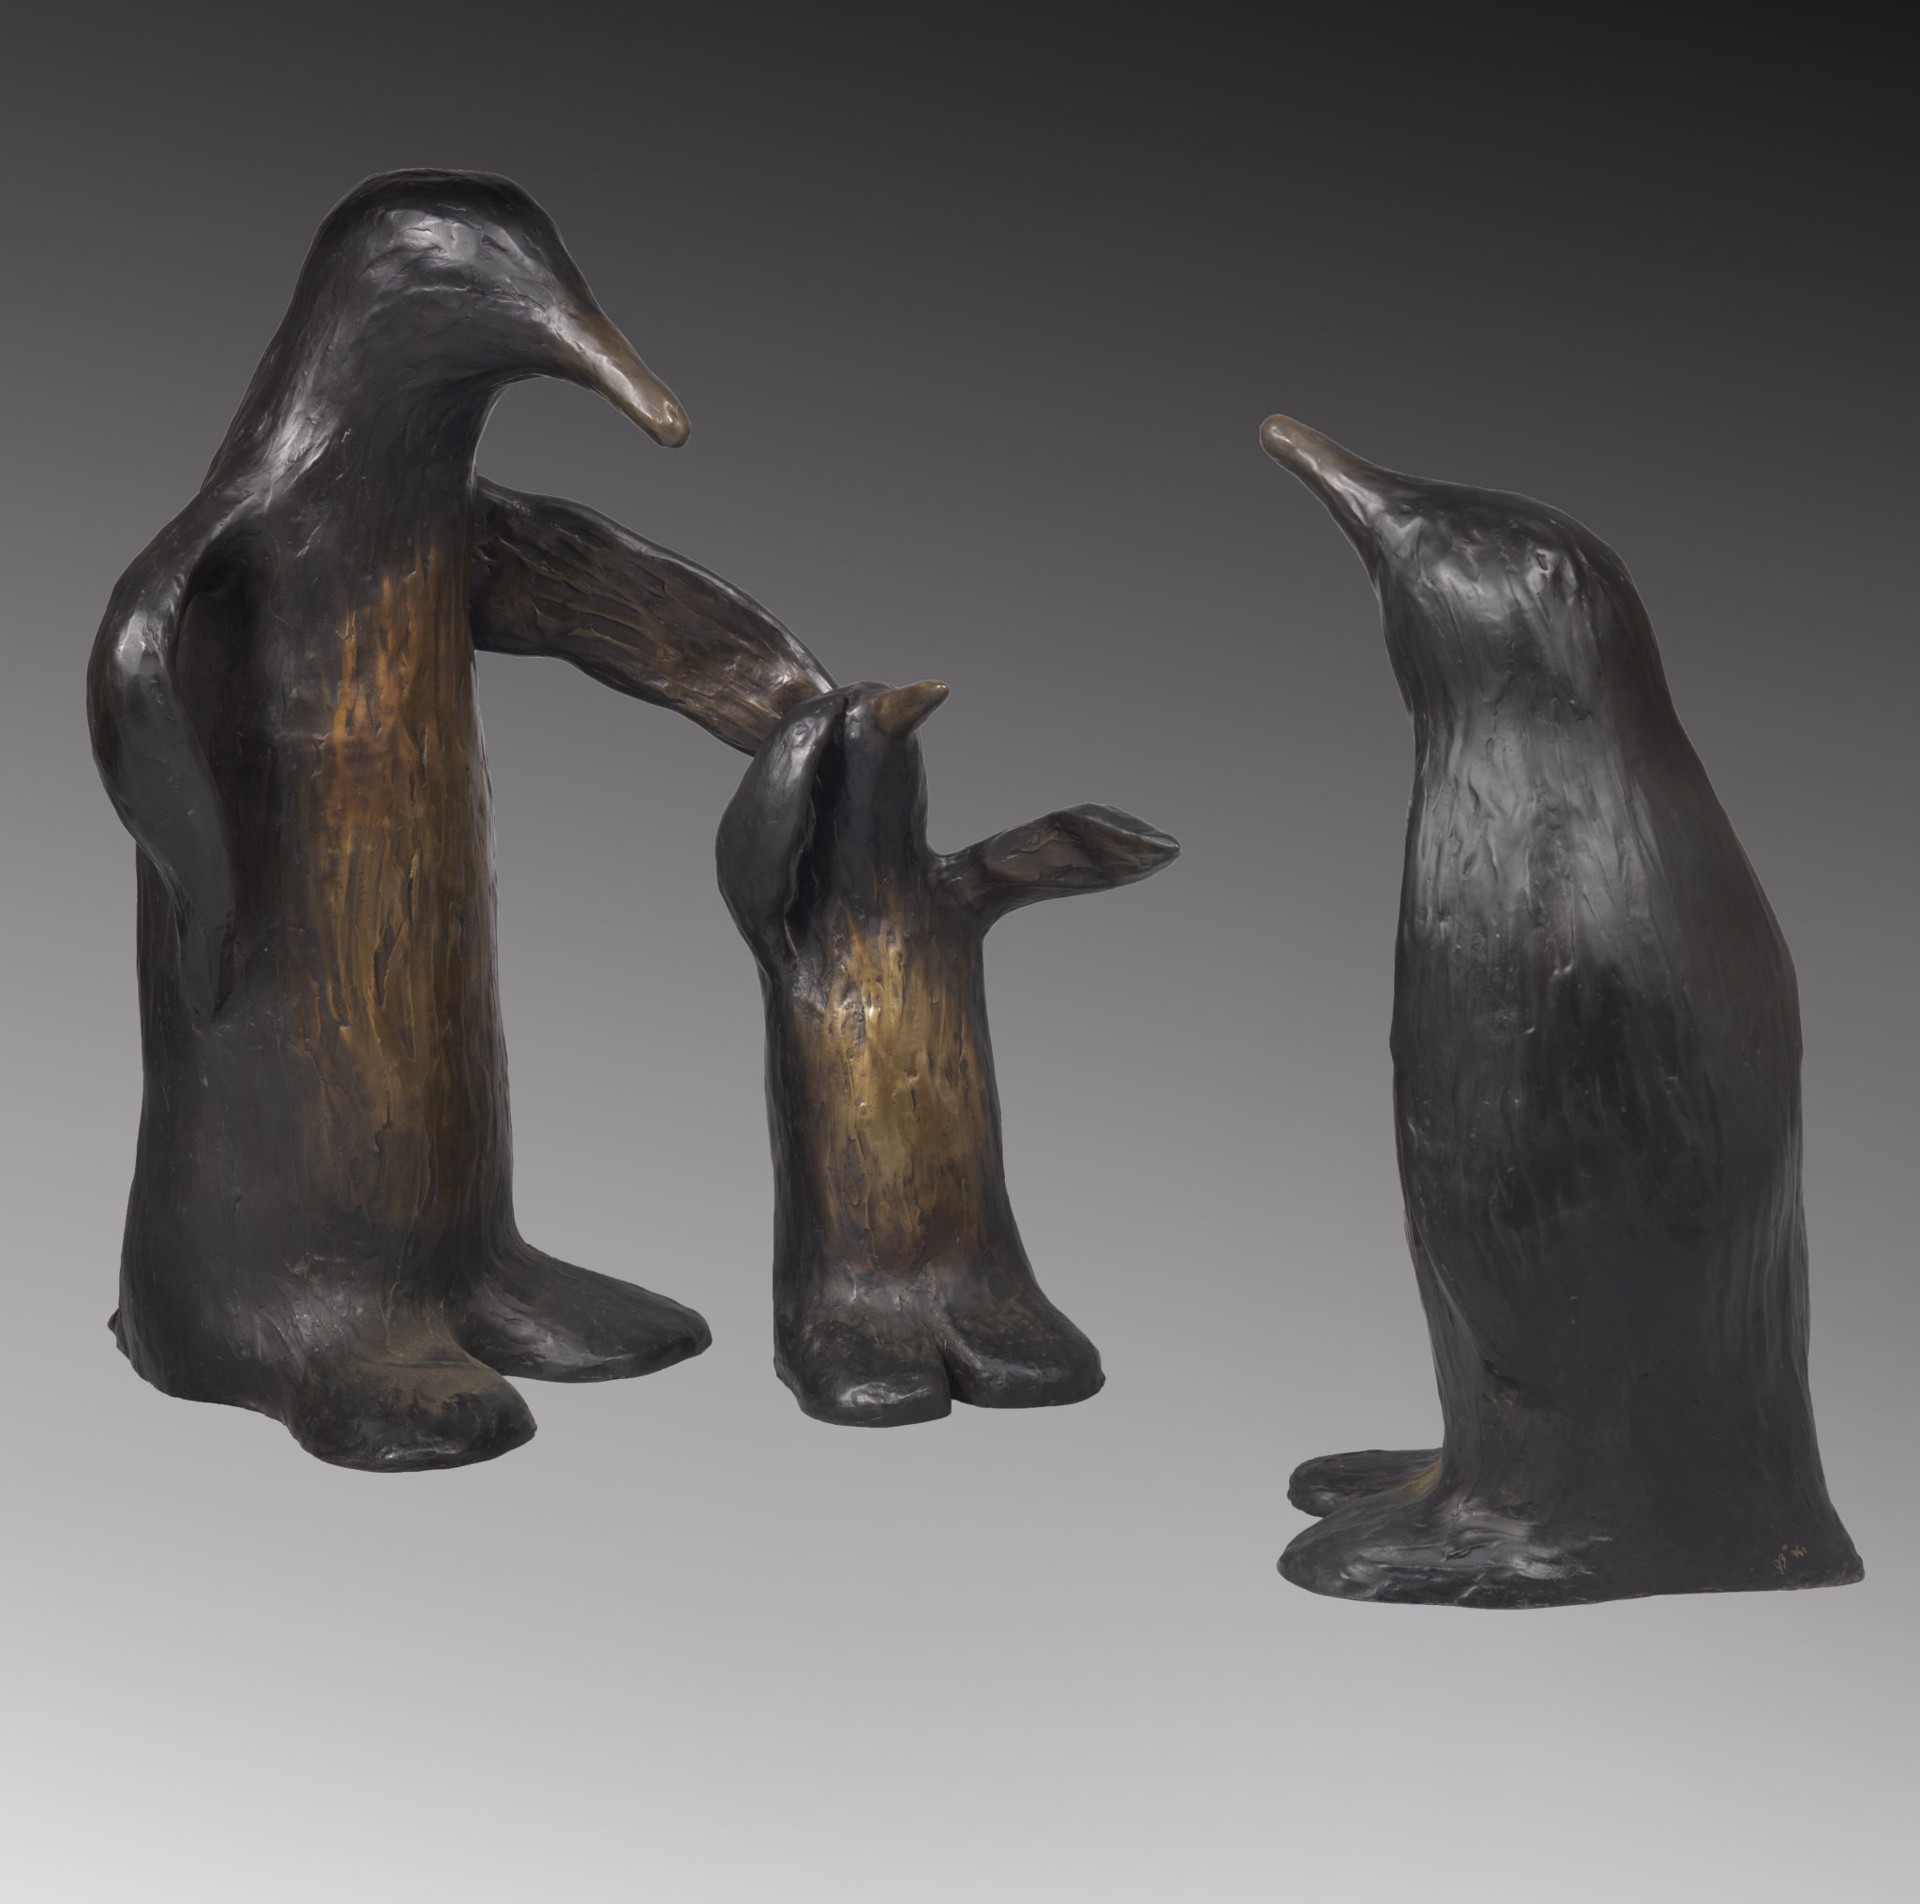 Penguin family set of 3 by Jim Budish